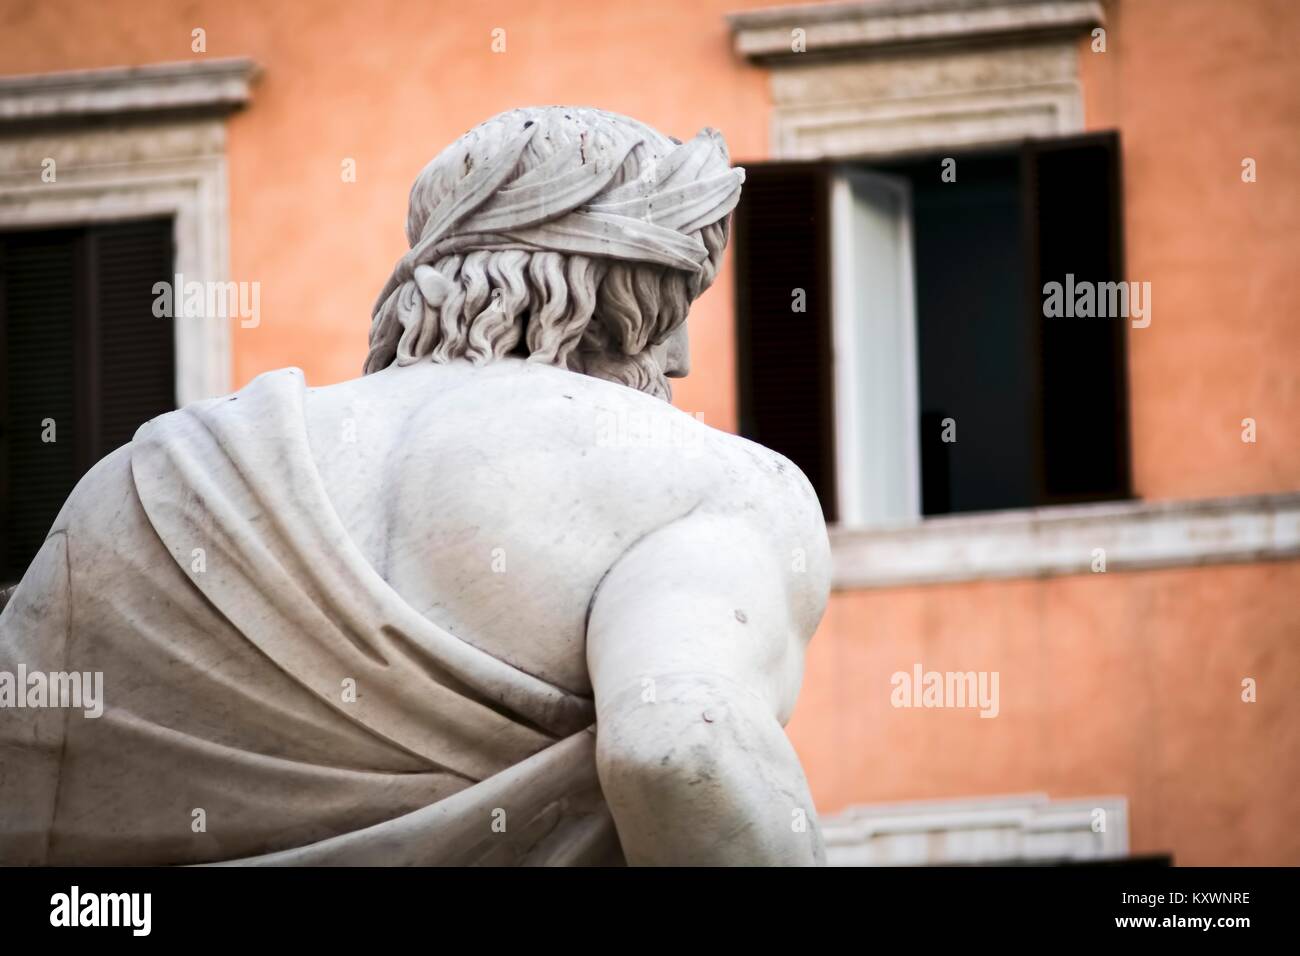 Statue du dieu Zeus vu de derrière, dans la Fontaine des Quatre Fleuves du Bernin à Piazza Navona, Rome - Détail de l't de figures allégoriques Banque D'Images